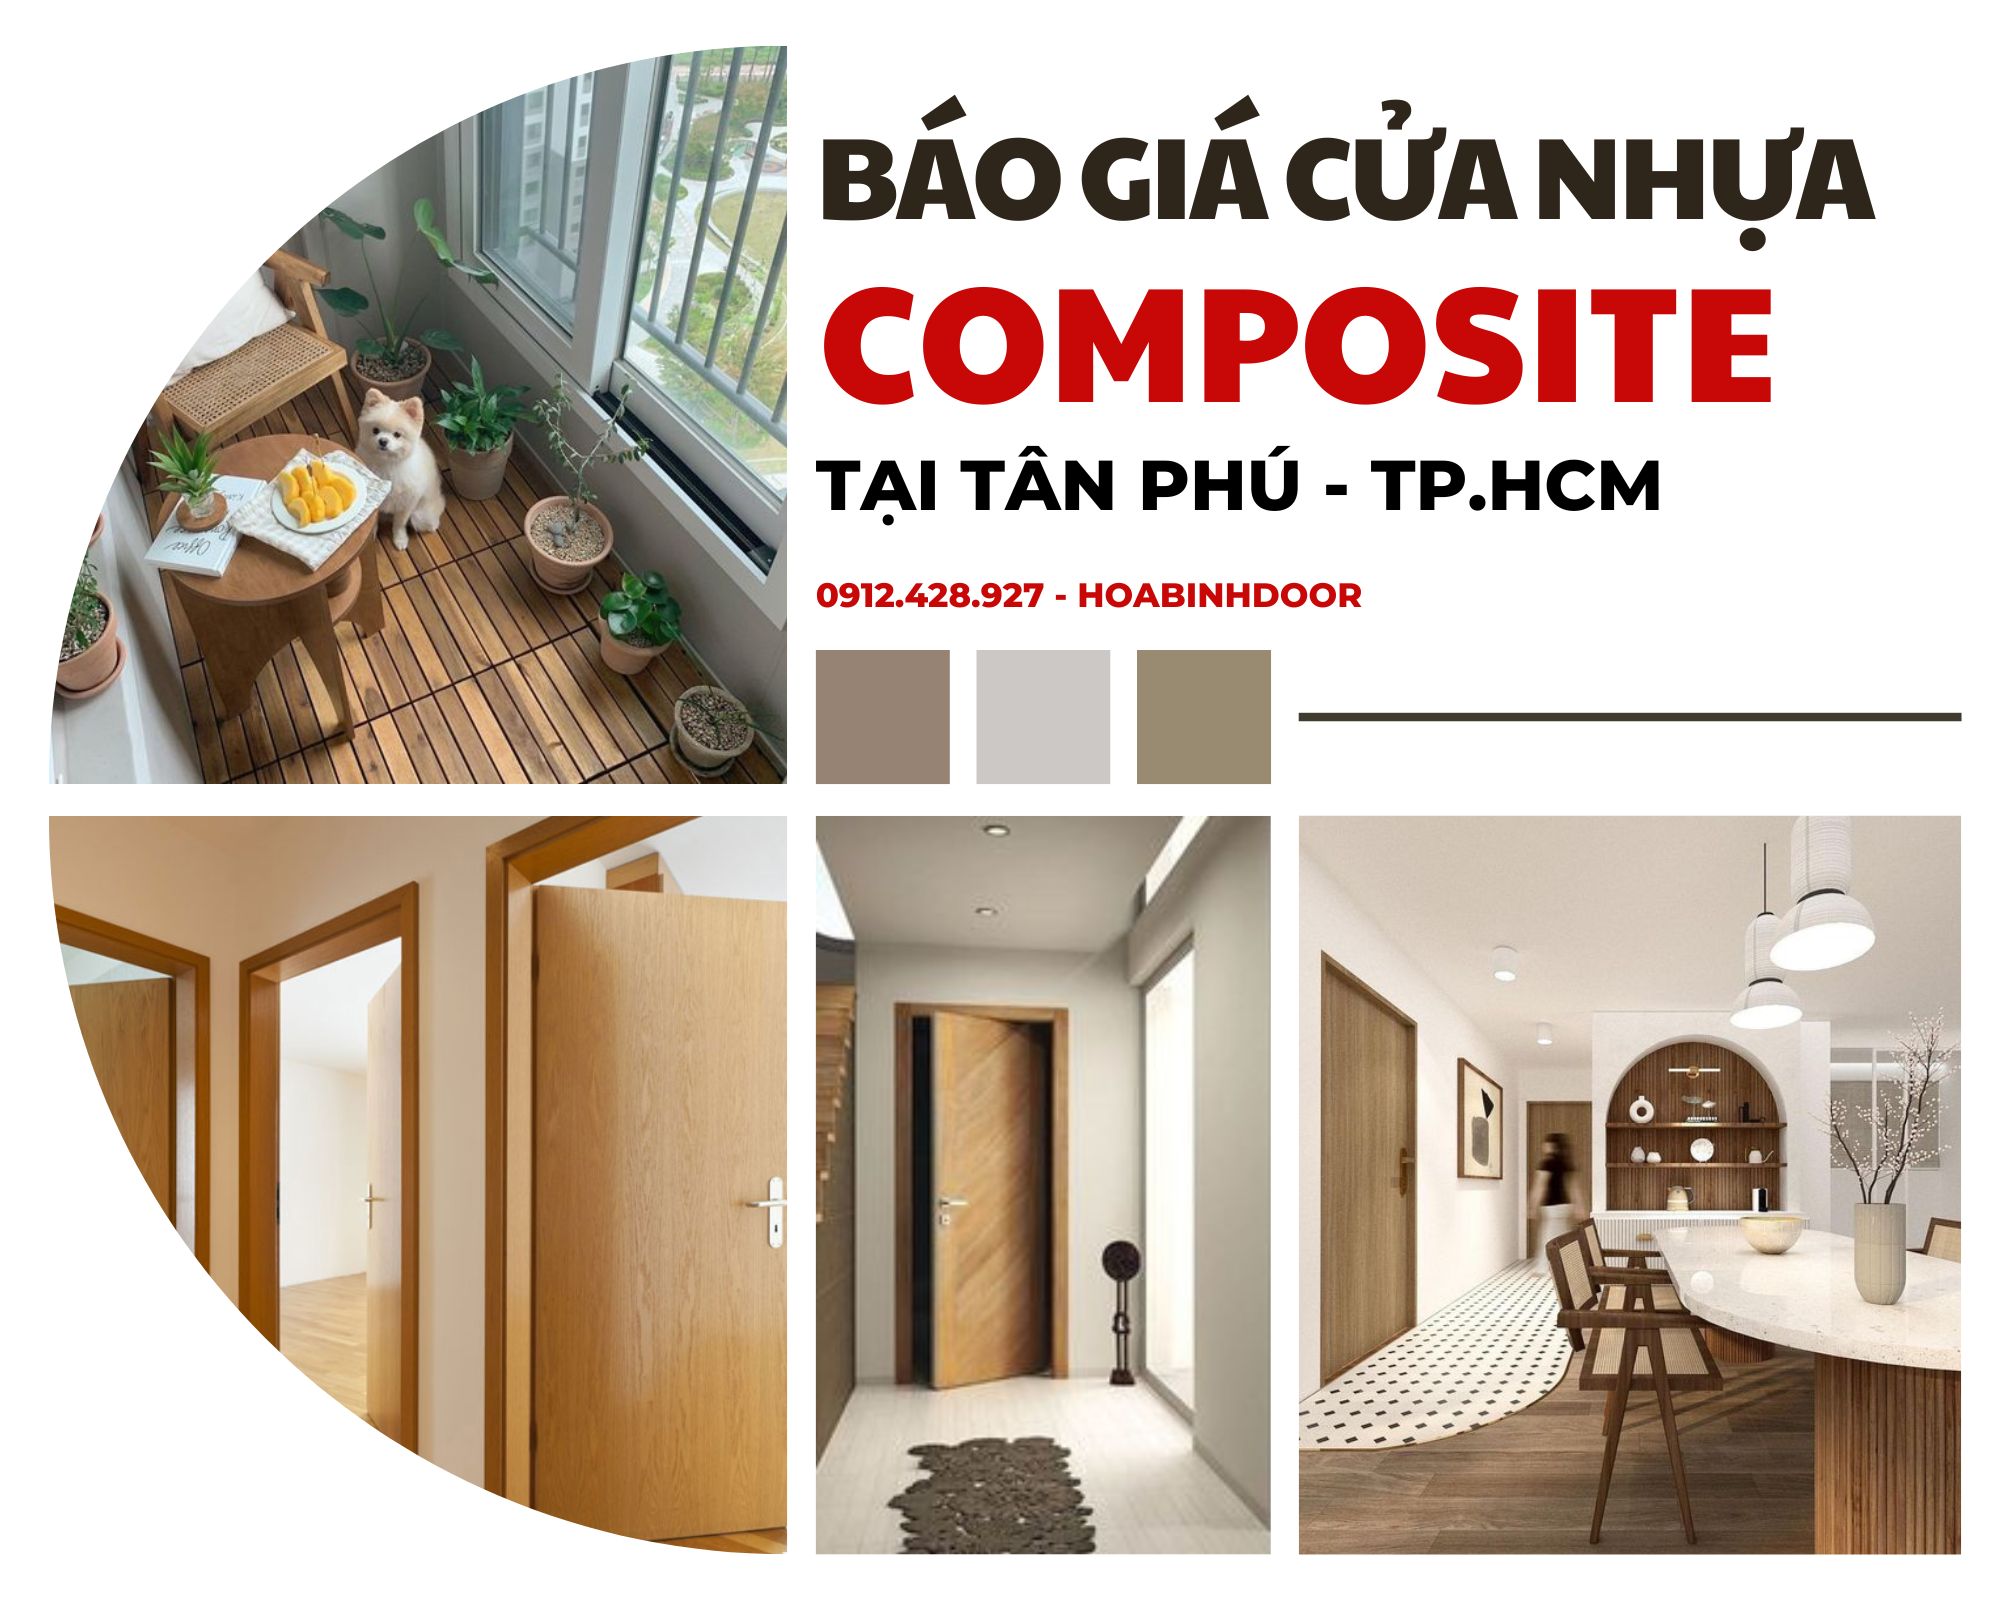 Cửa nhựa Composite tại Tân Phú  Giá chỉ từ 3.000.000 VNĐ/bộ